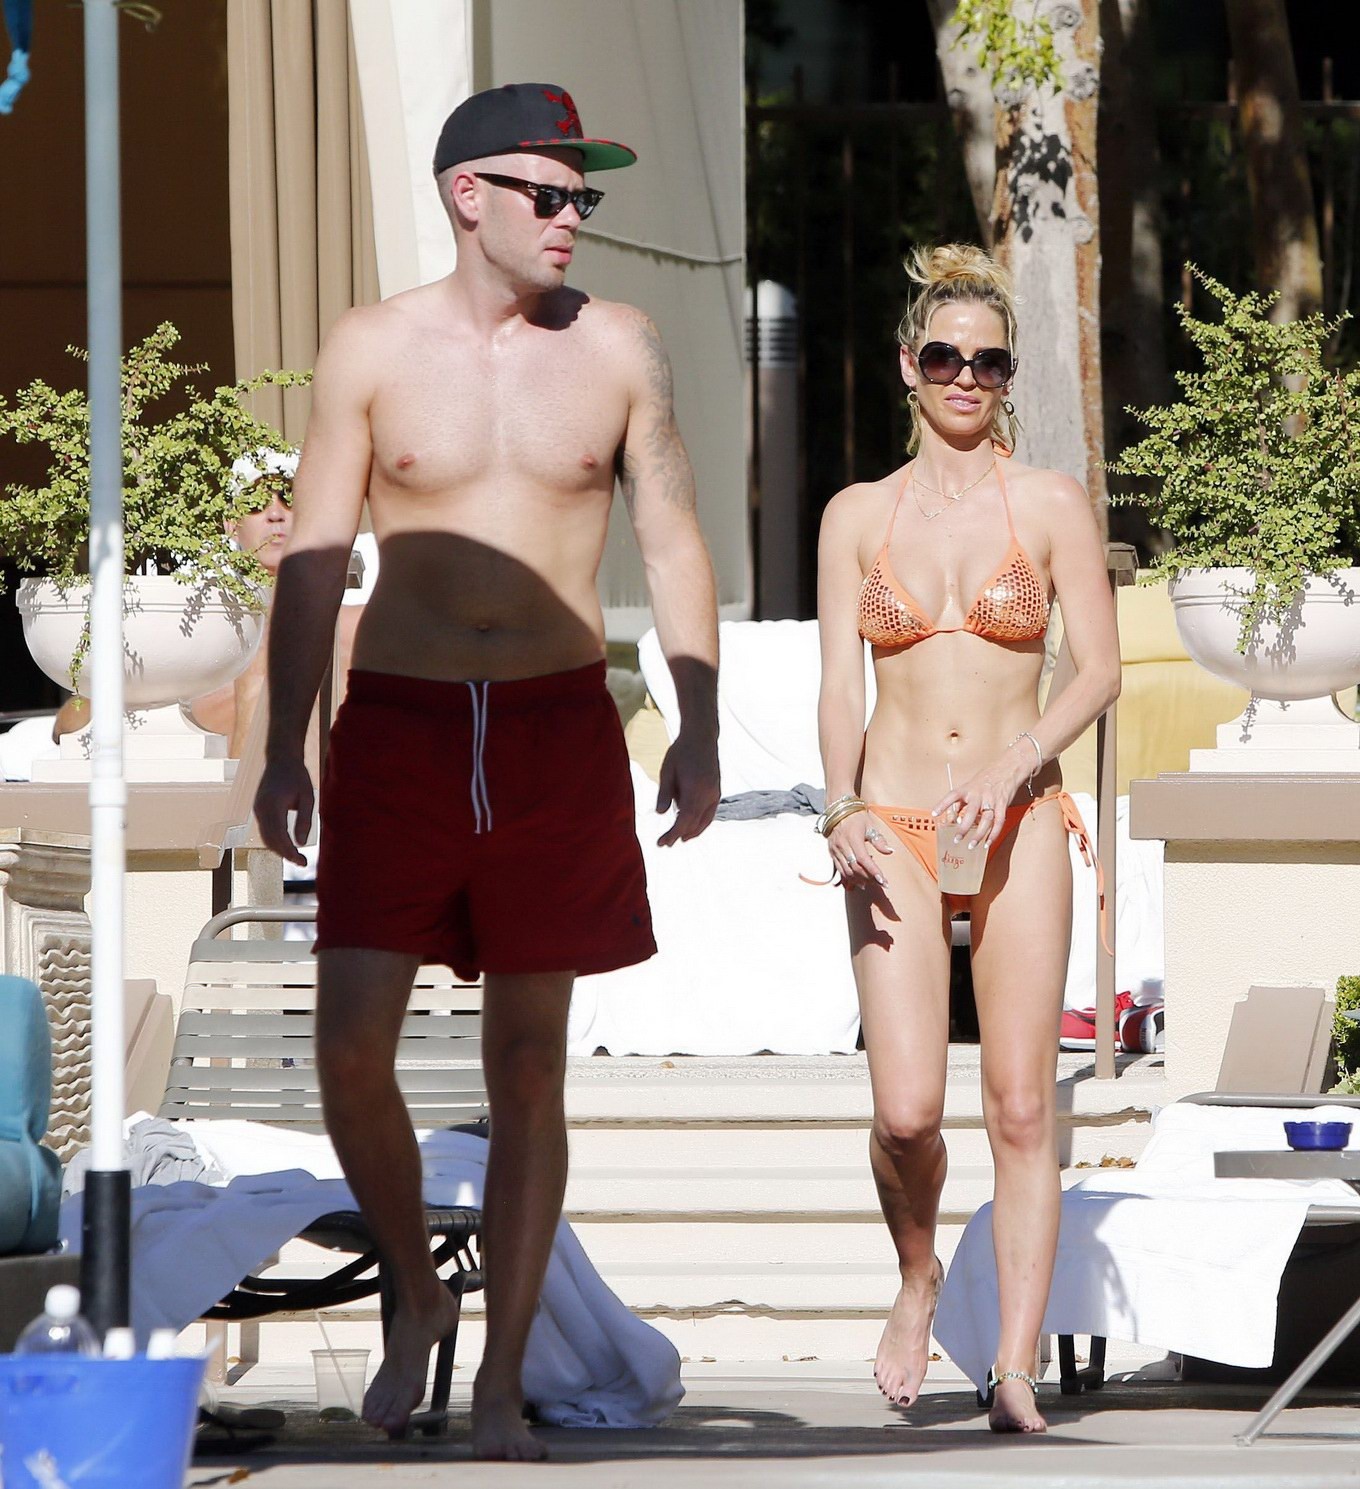 Sarah Harding wearing an orange bikini at the pool in Las Vegas #75208851